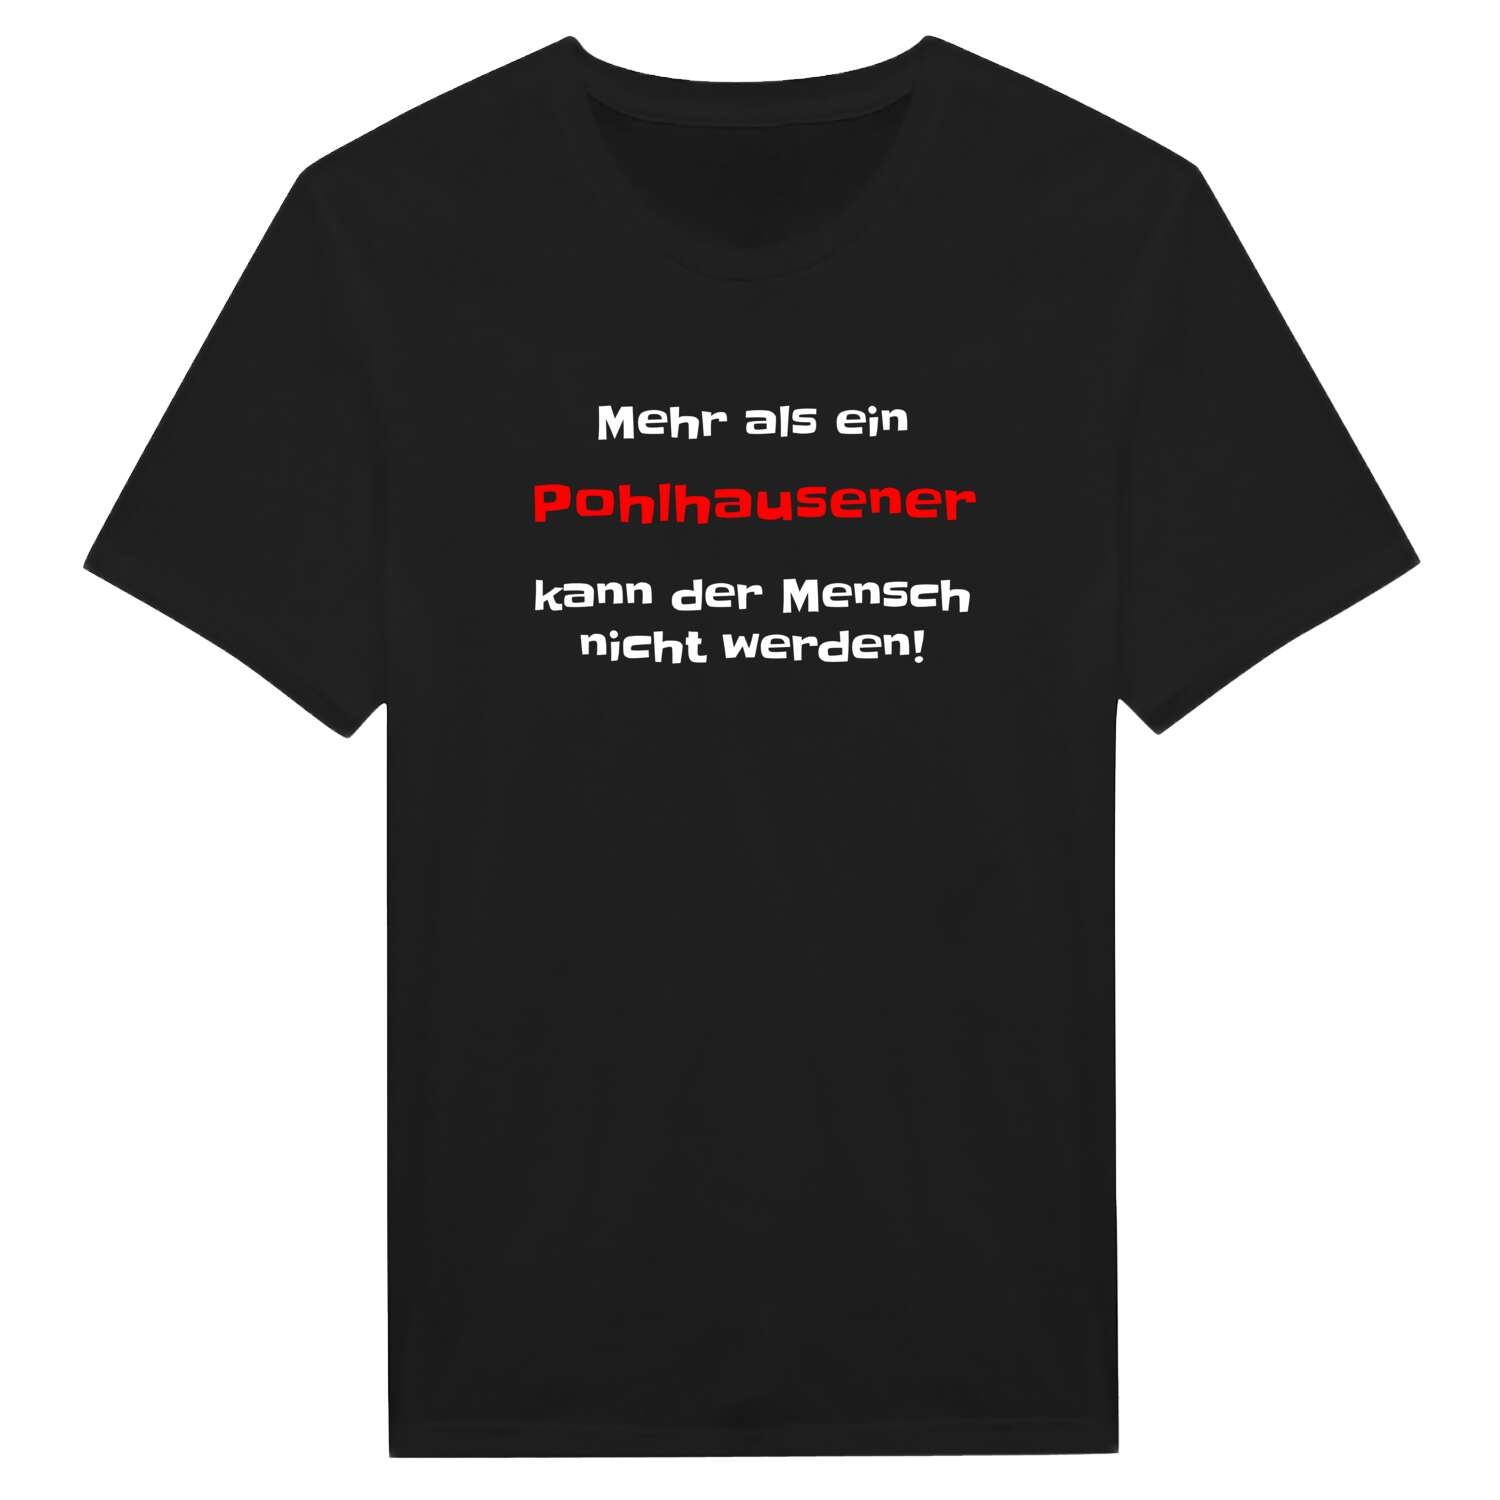 Pohlhausen T-Shirt »Mehr als ein«